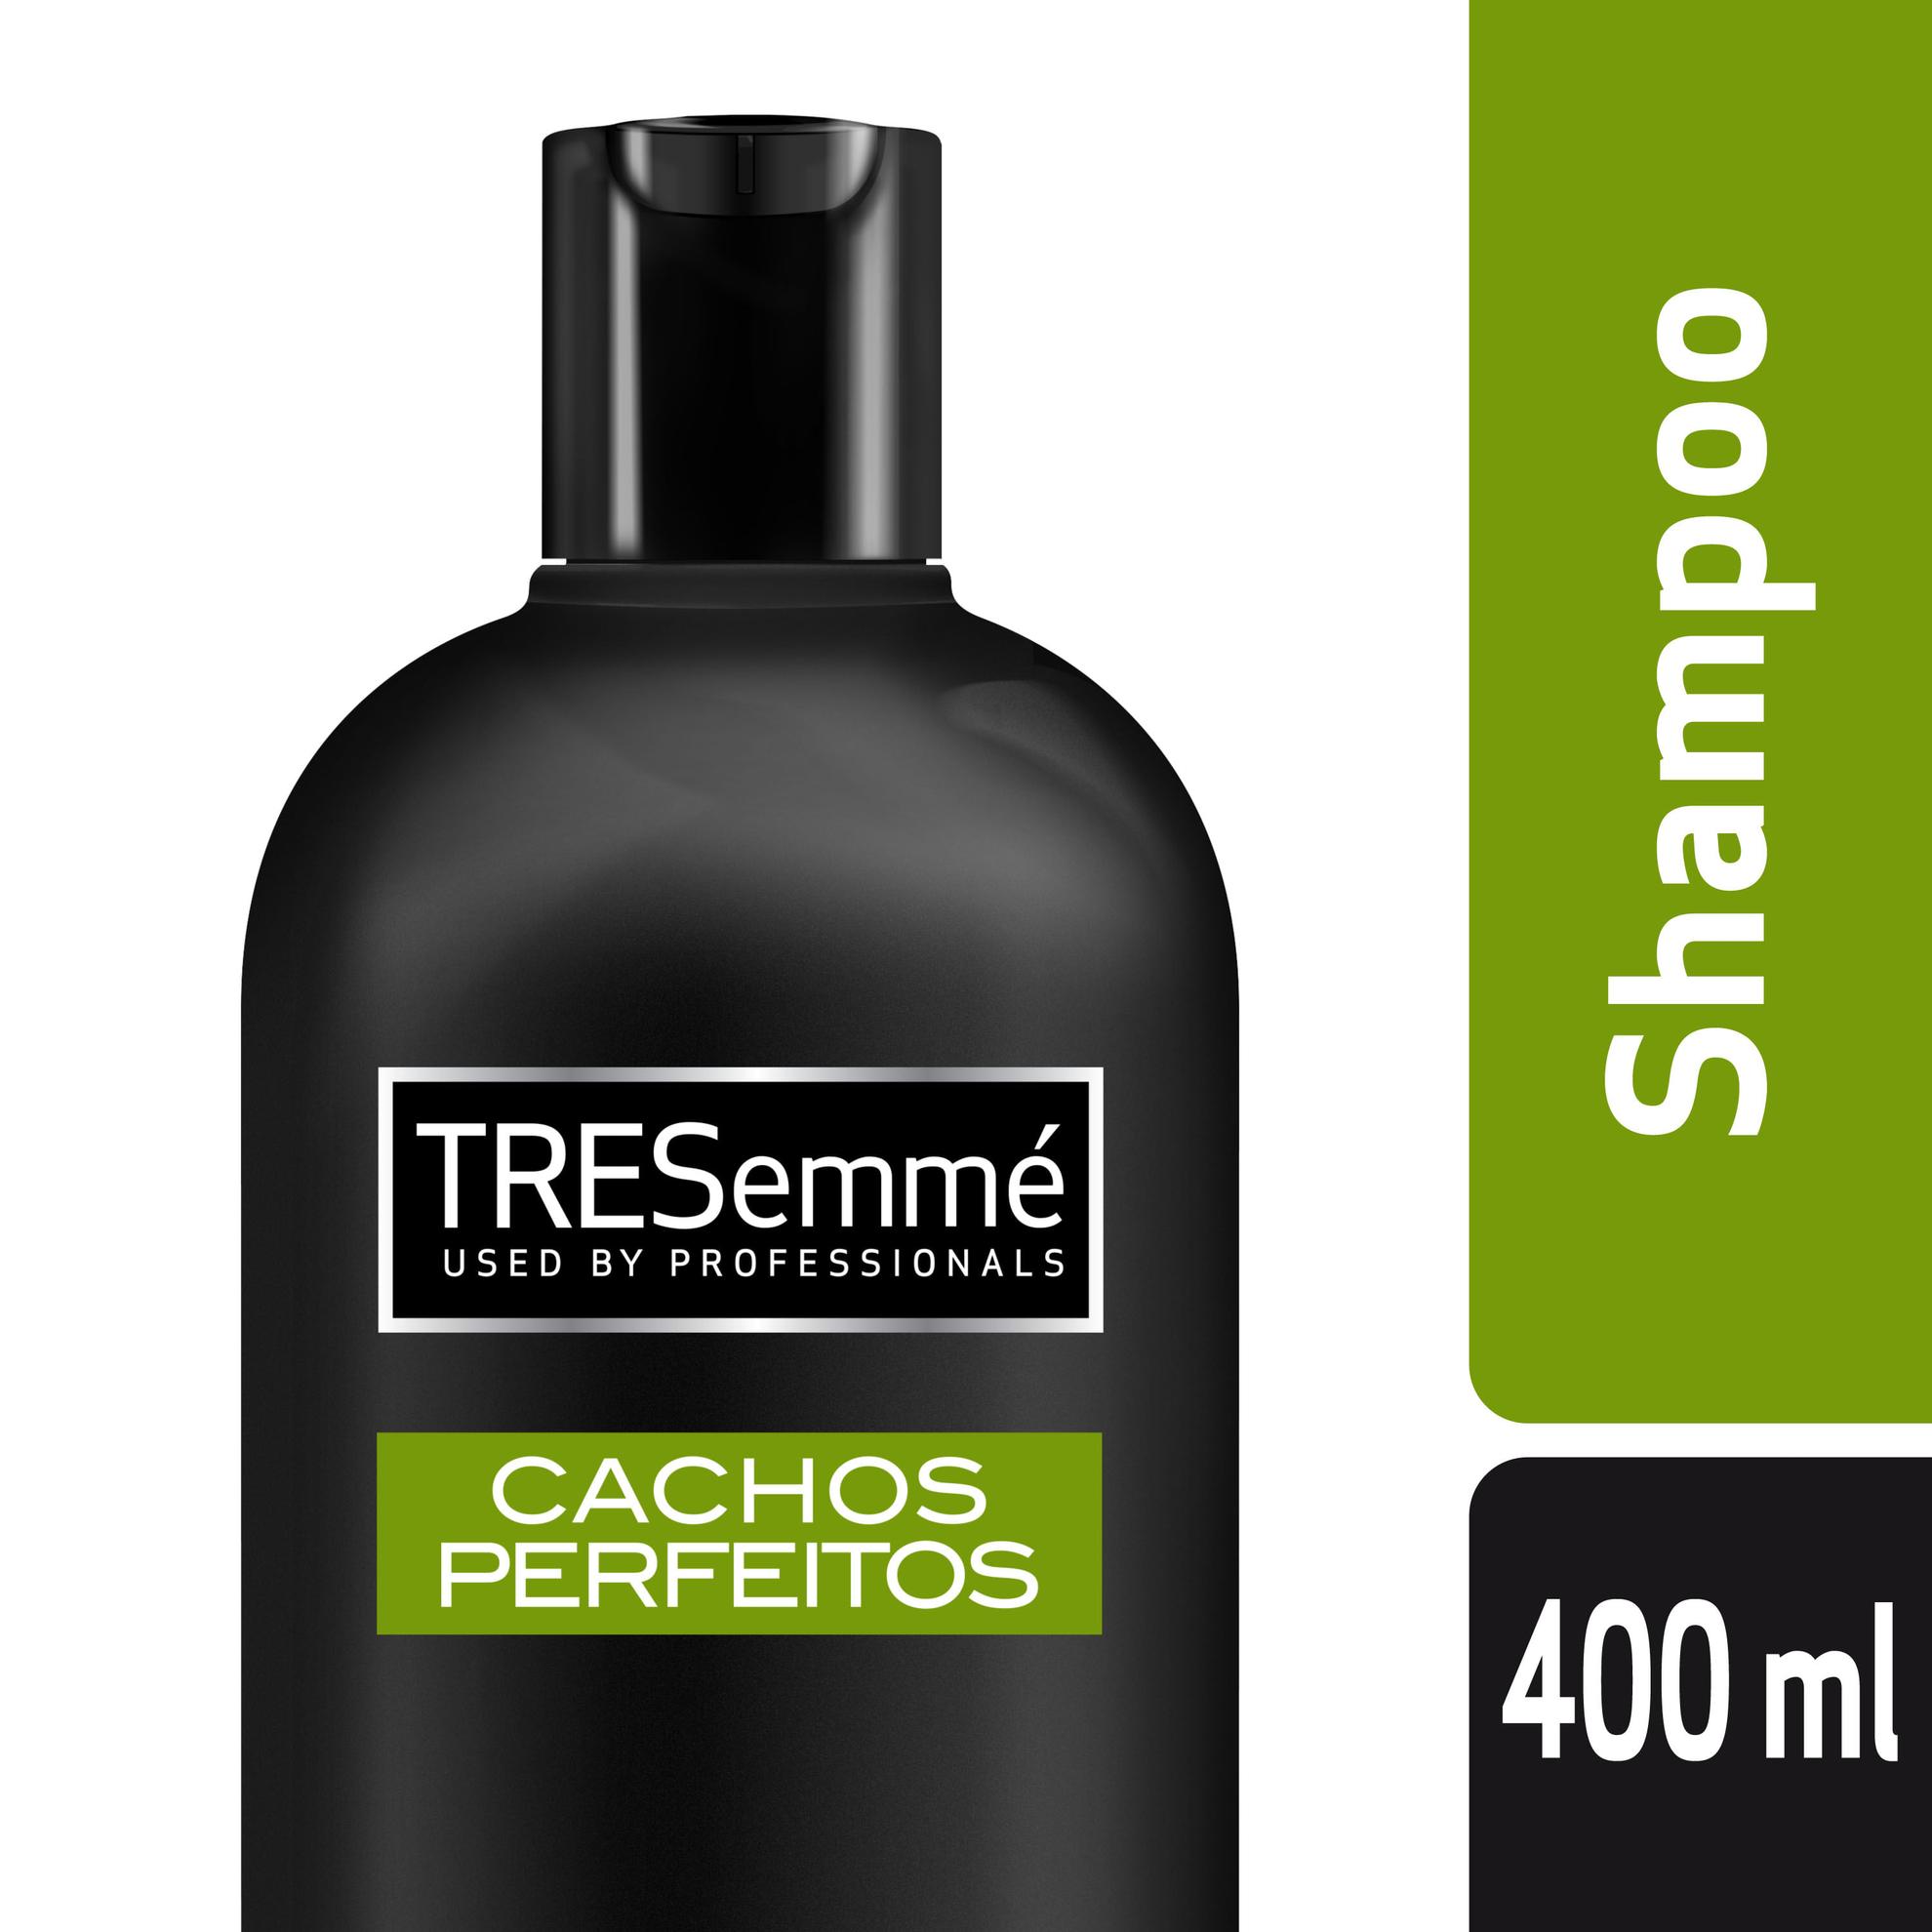 Oferta de Shampoo Tresemme Cachos Perfeitos 400ml por R$10,37 em Farmácias Pague Menos